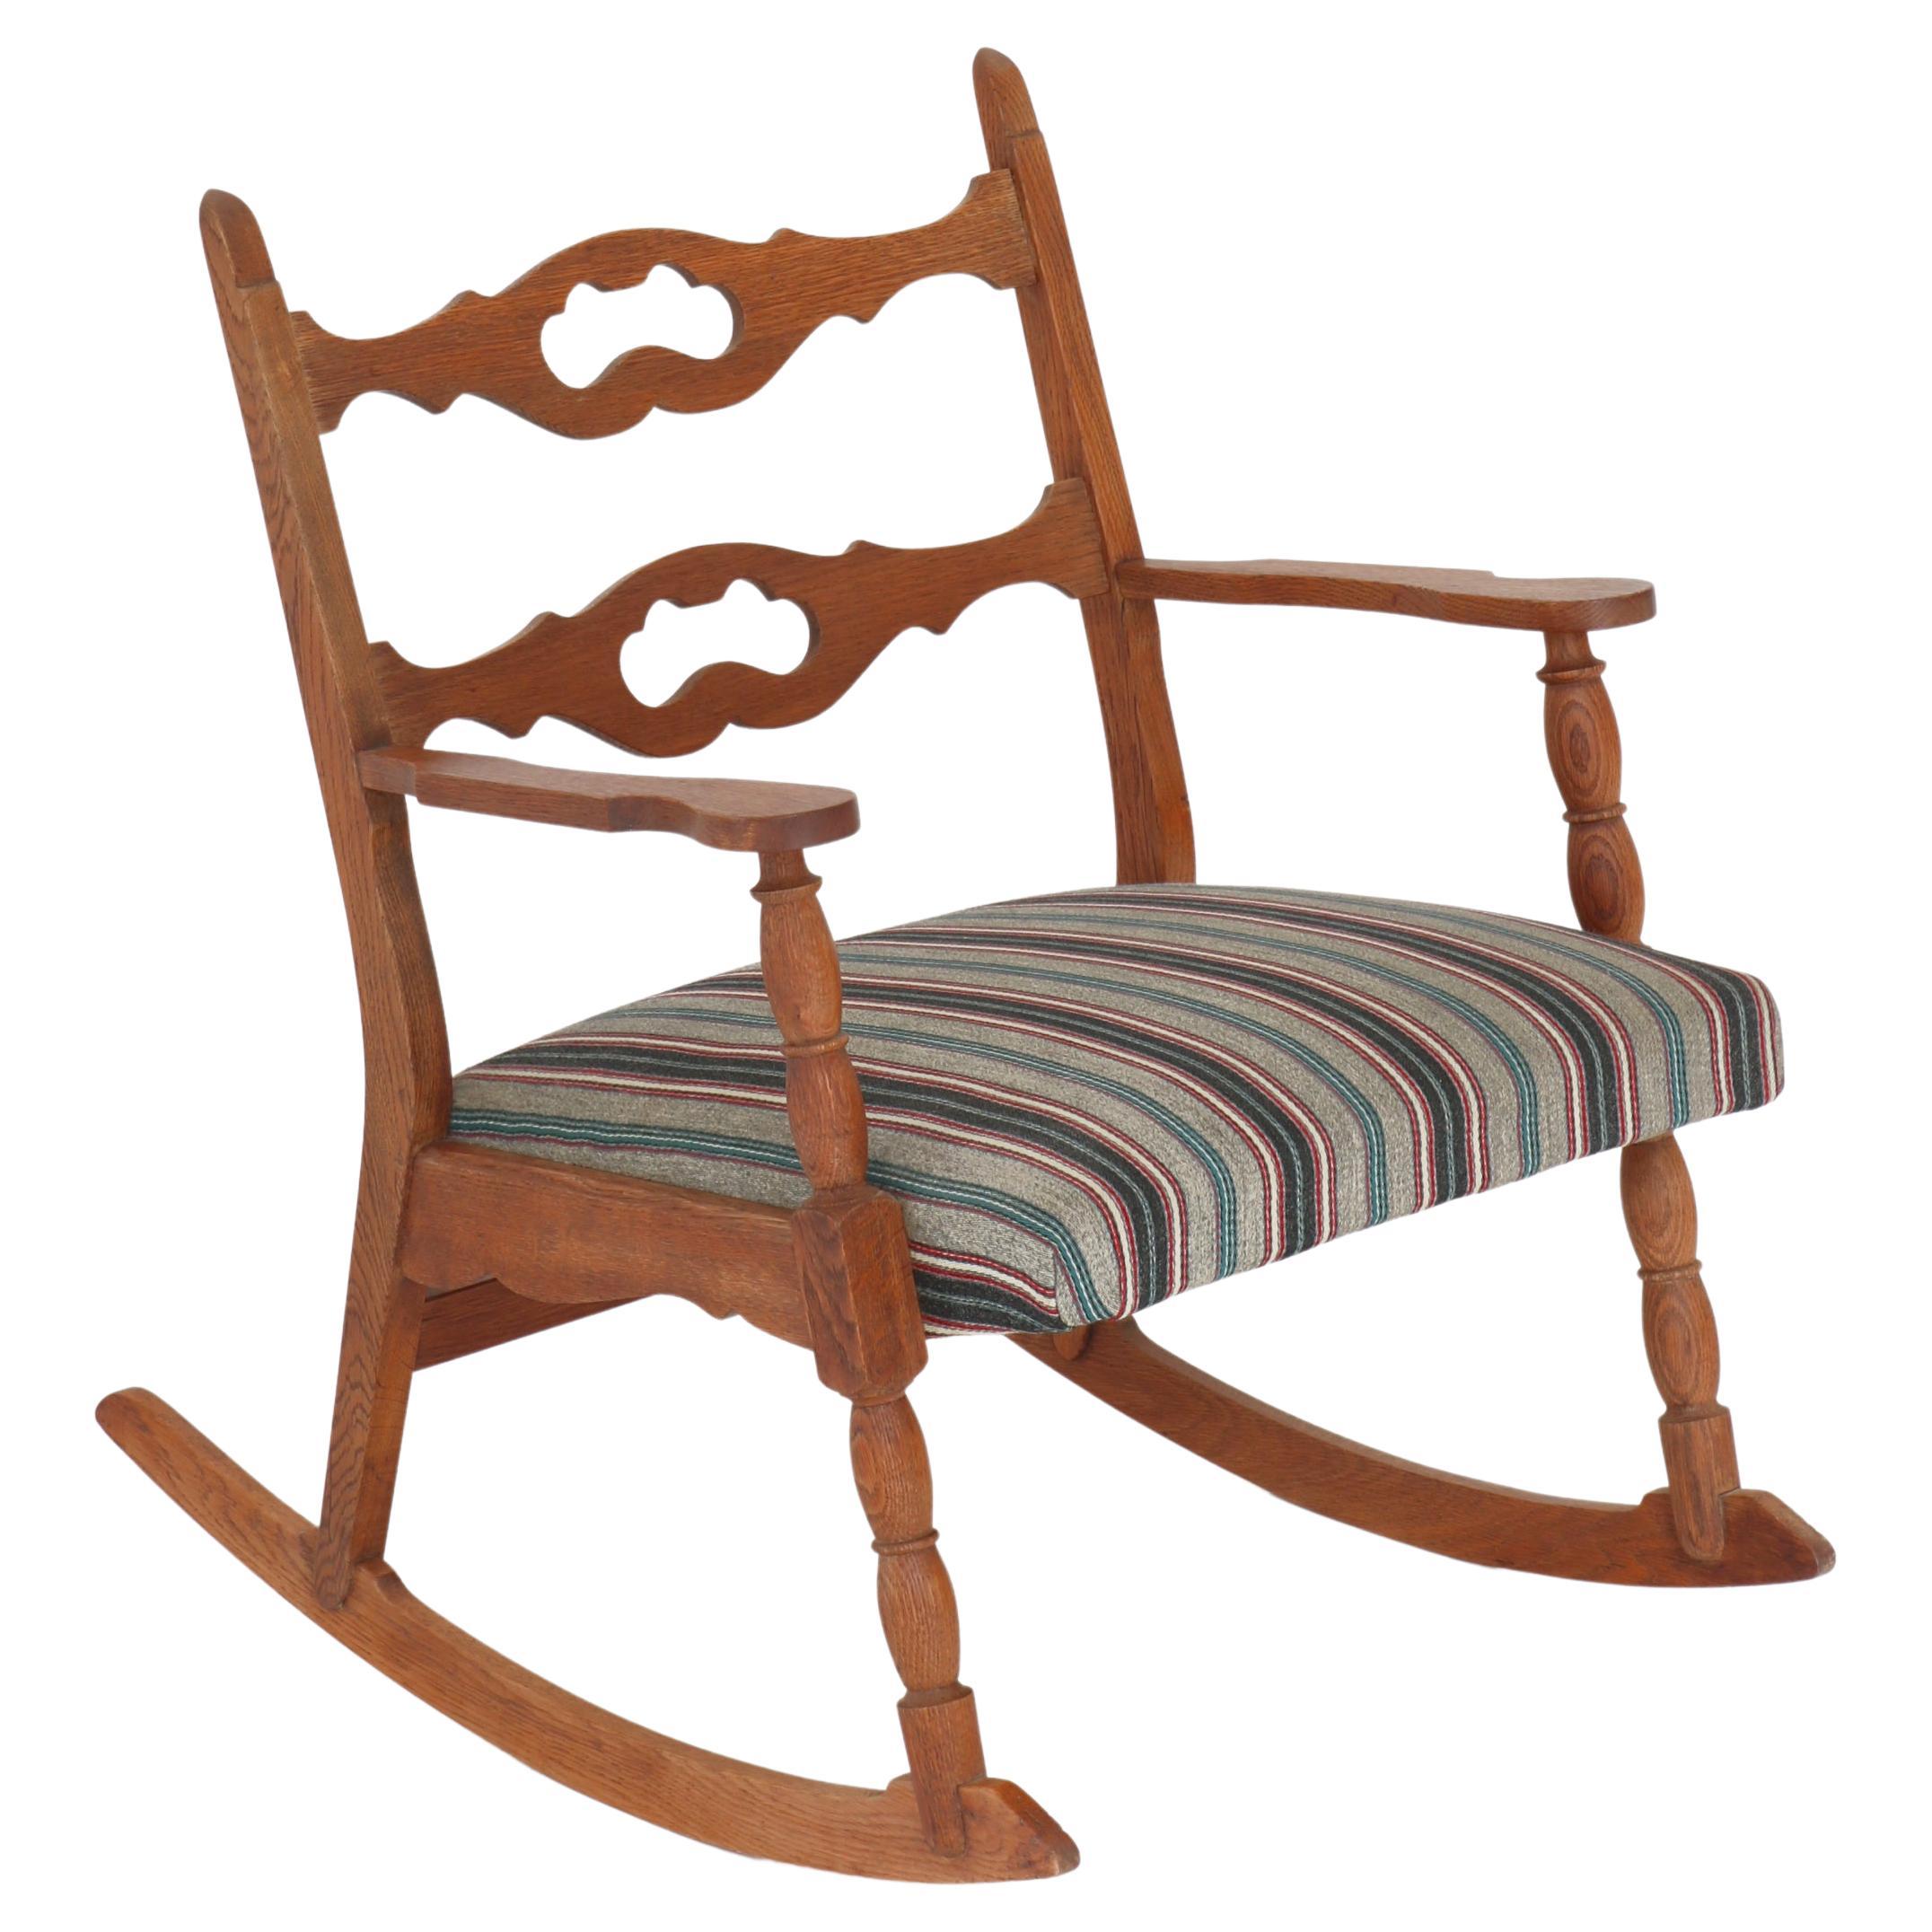 1950s Rocking Chair in Oak & Wool Fabric by Henry Kjærnulff, Danish Modern